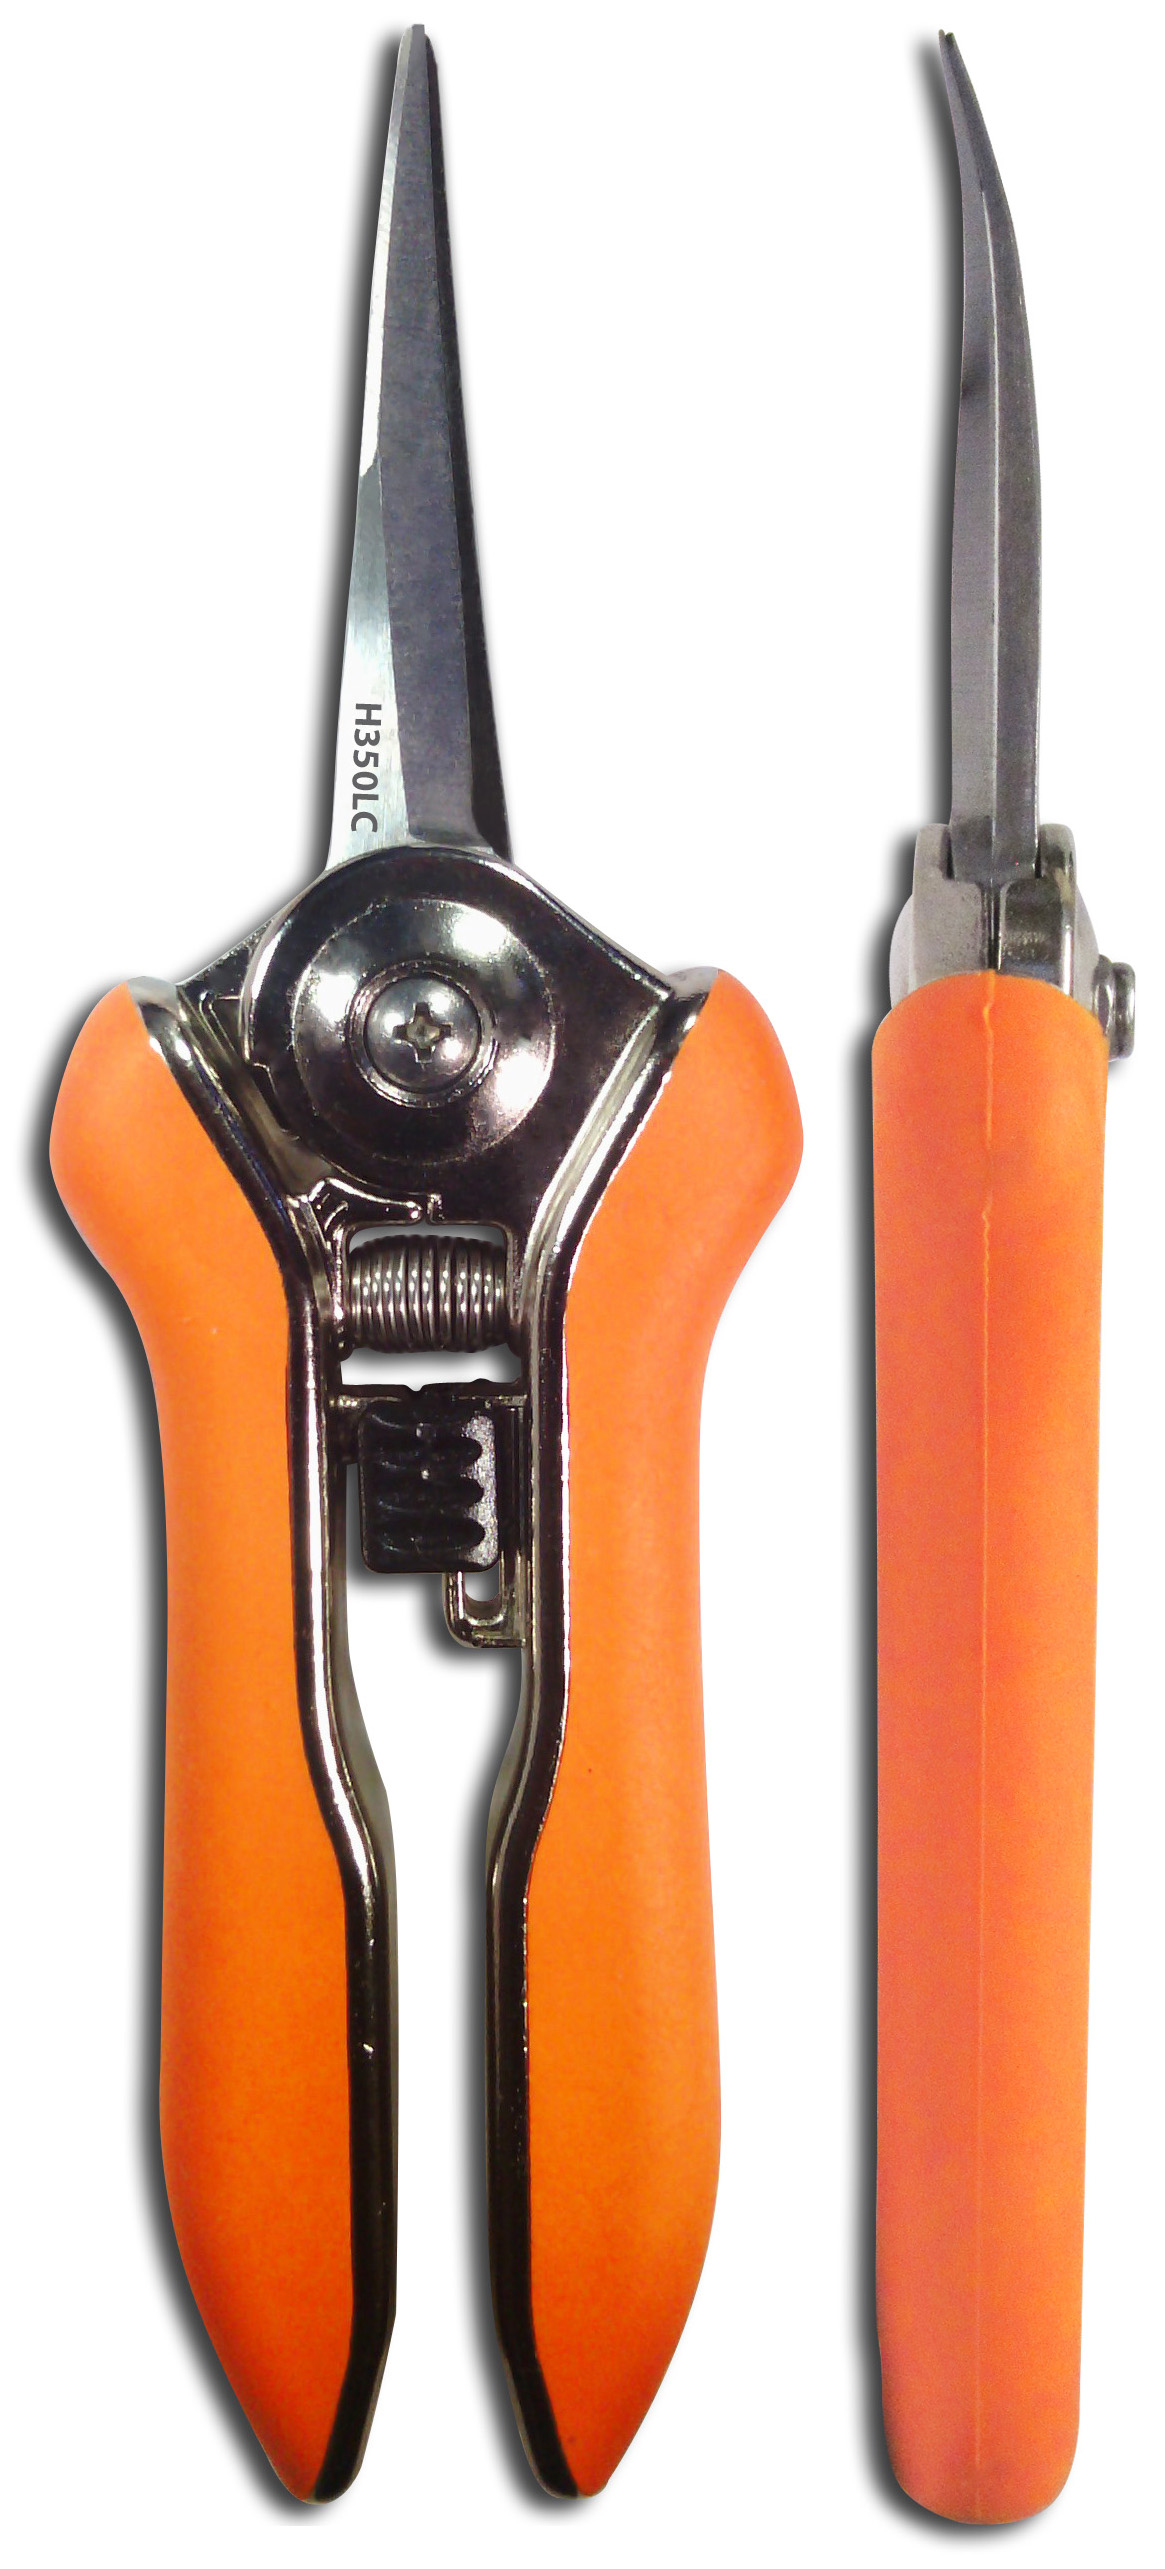 Zenport Fold-Away Pocket Snips [H329] - Discount Tools & Supplies